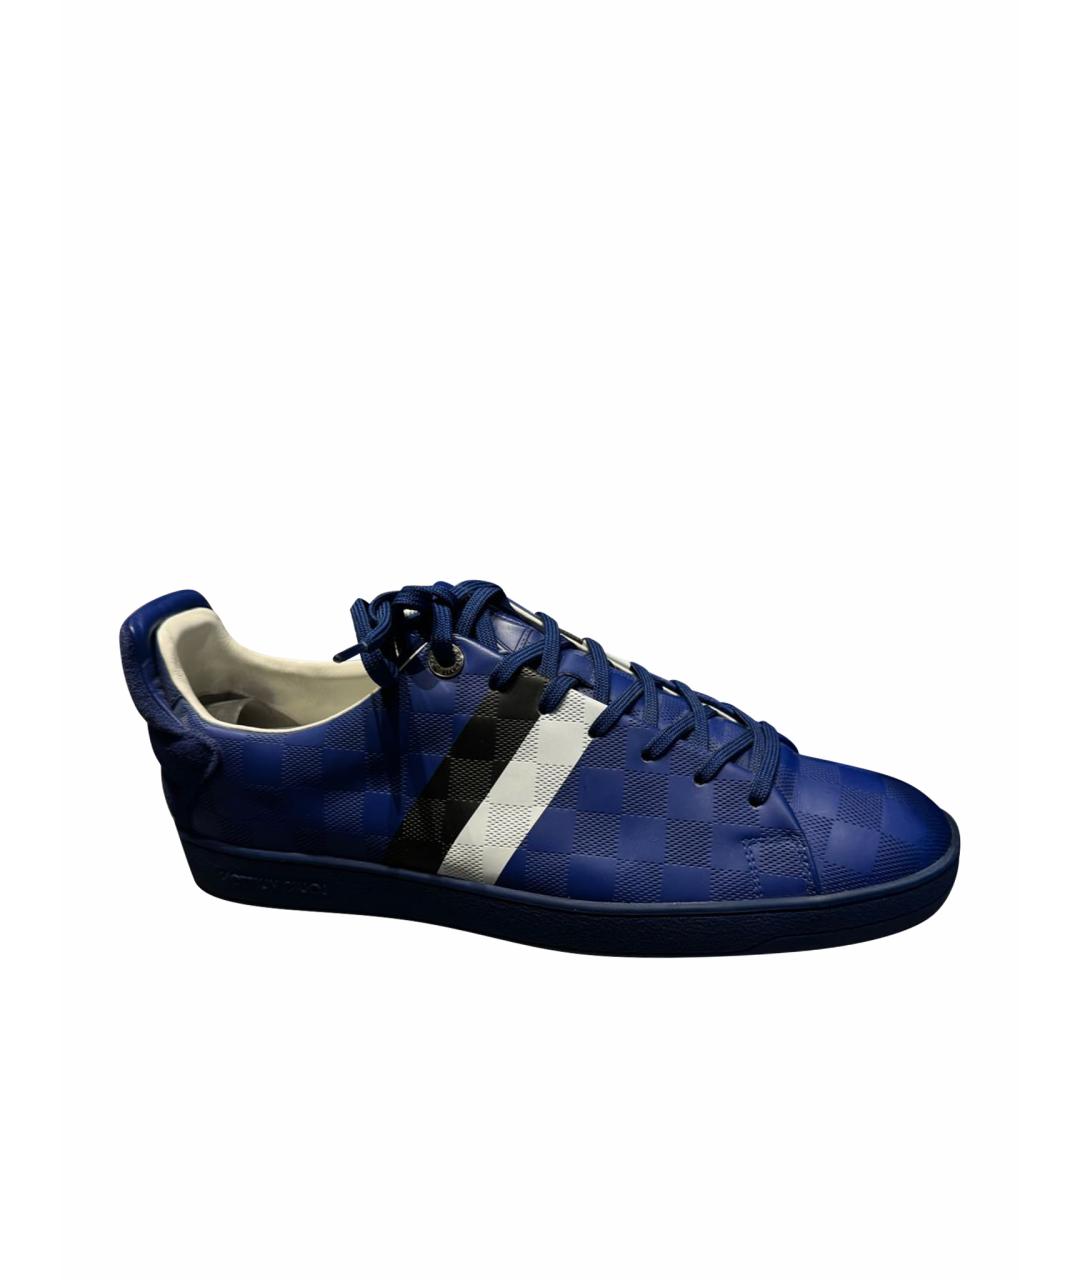 LOUIS VUITTON PRE-OWNED Синие низкие кроссовки / кеды из лакированной кожи, фото 1